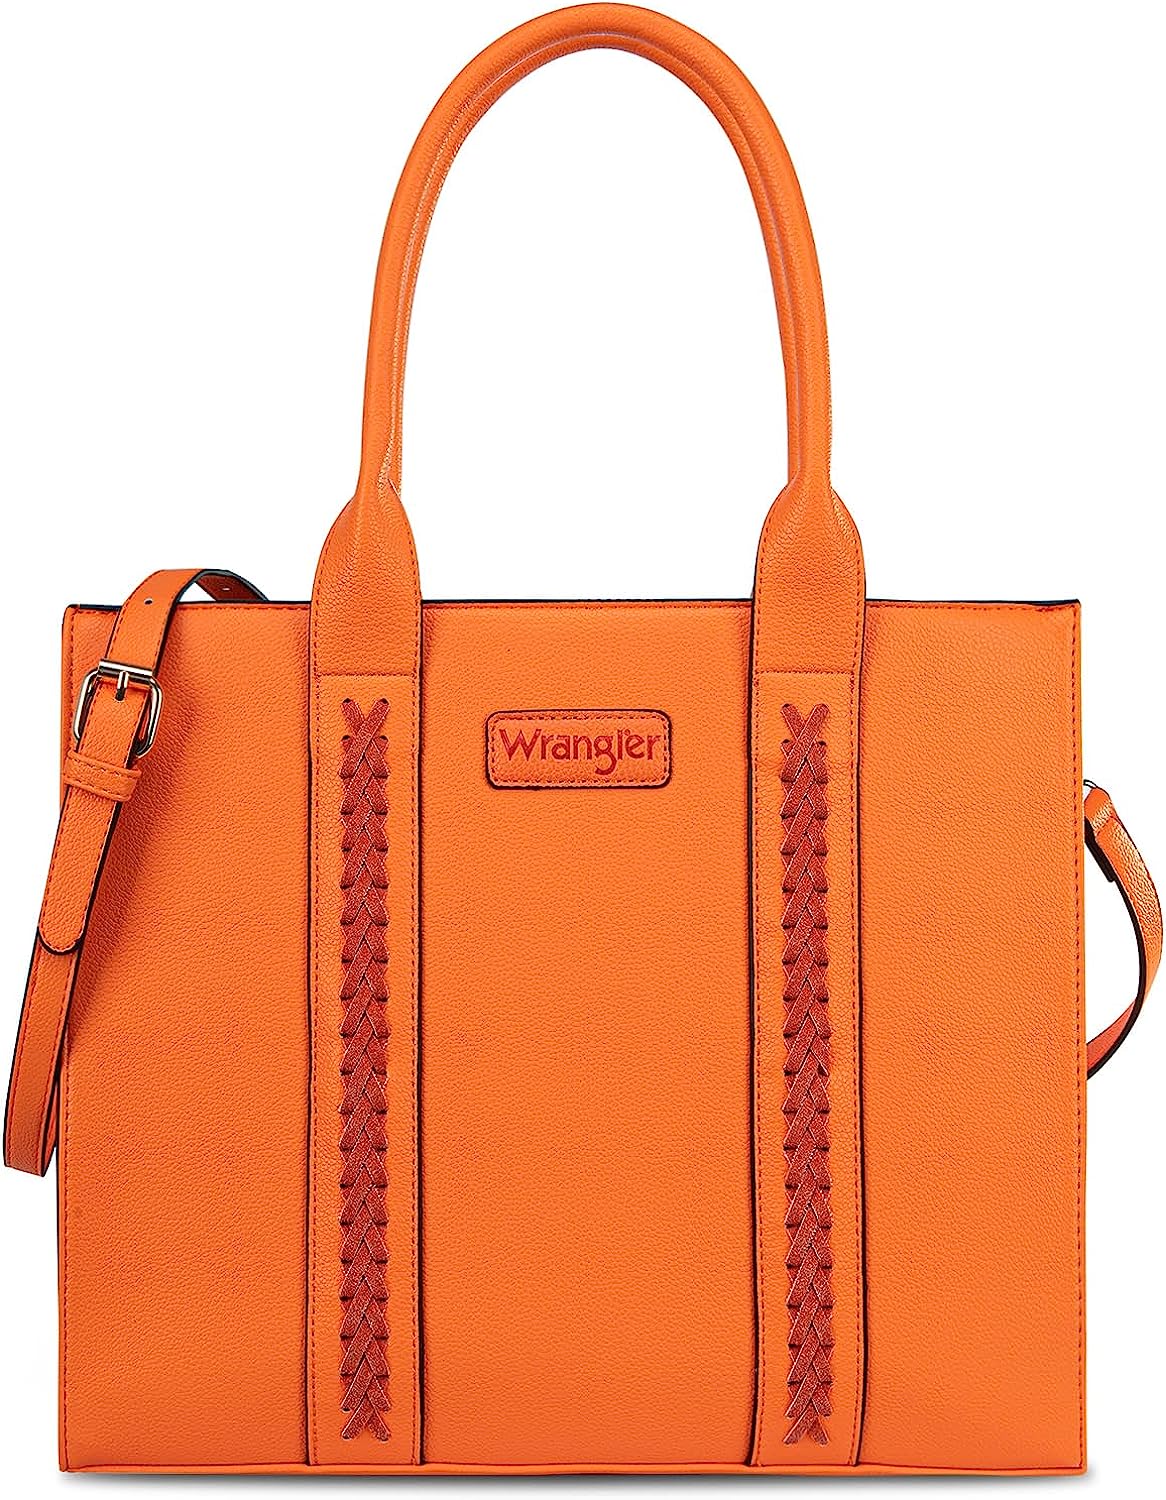 WG70-8317 Wrangler Carry-All Tote/Crossbody - Orange – MONTANA WEST U.S.A